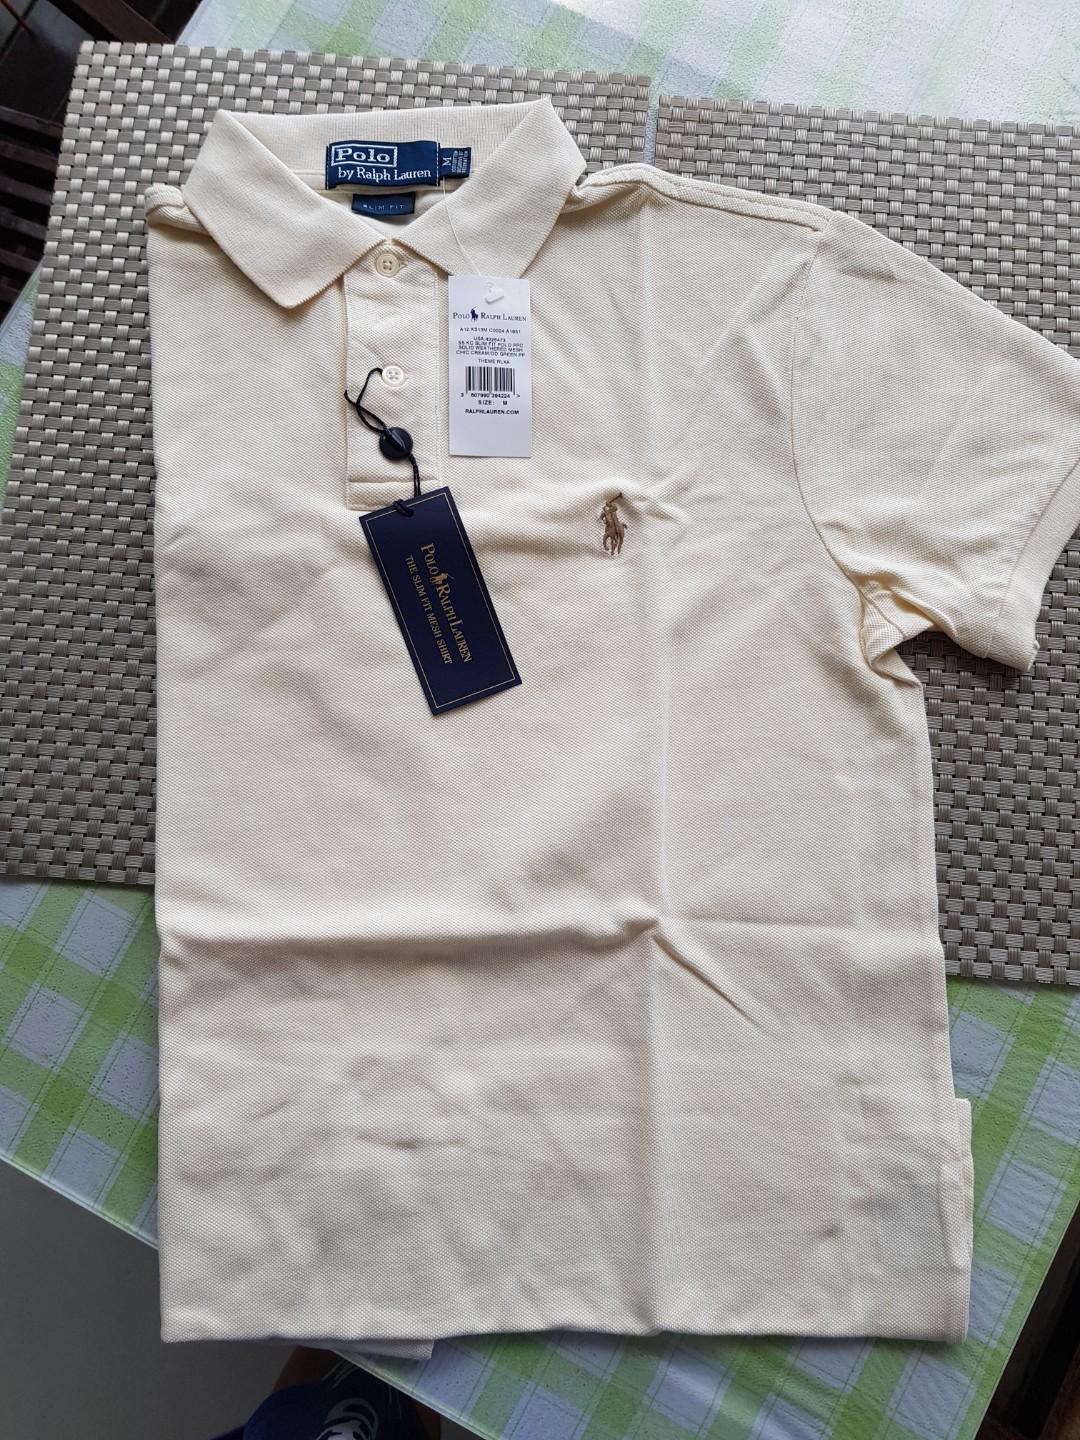 ralph lauren shirt dress sale